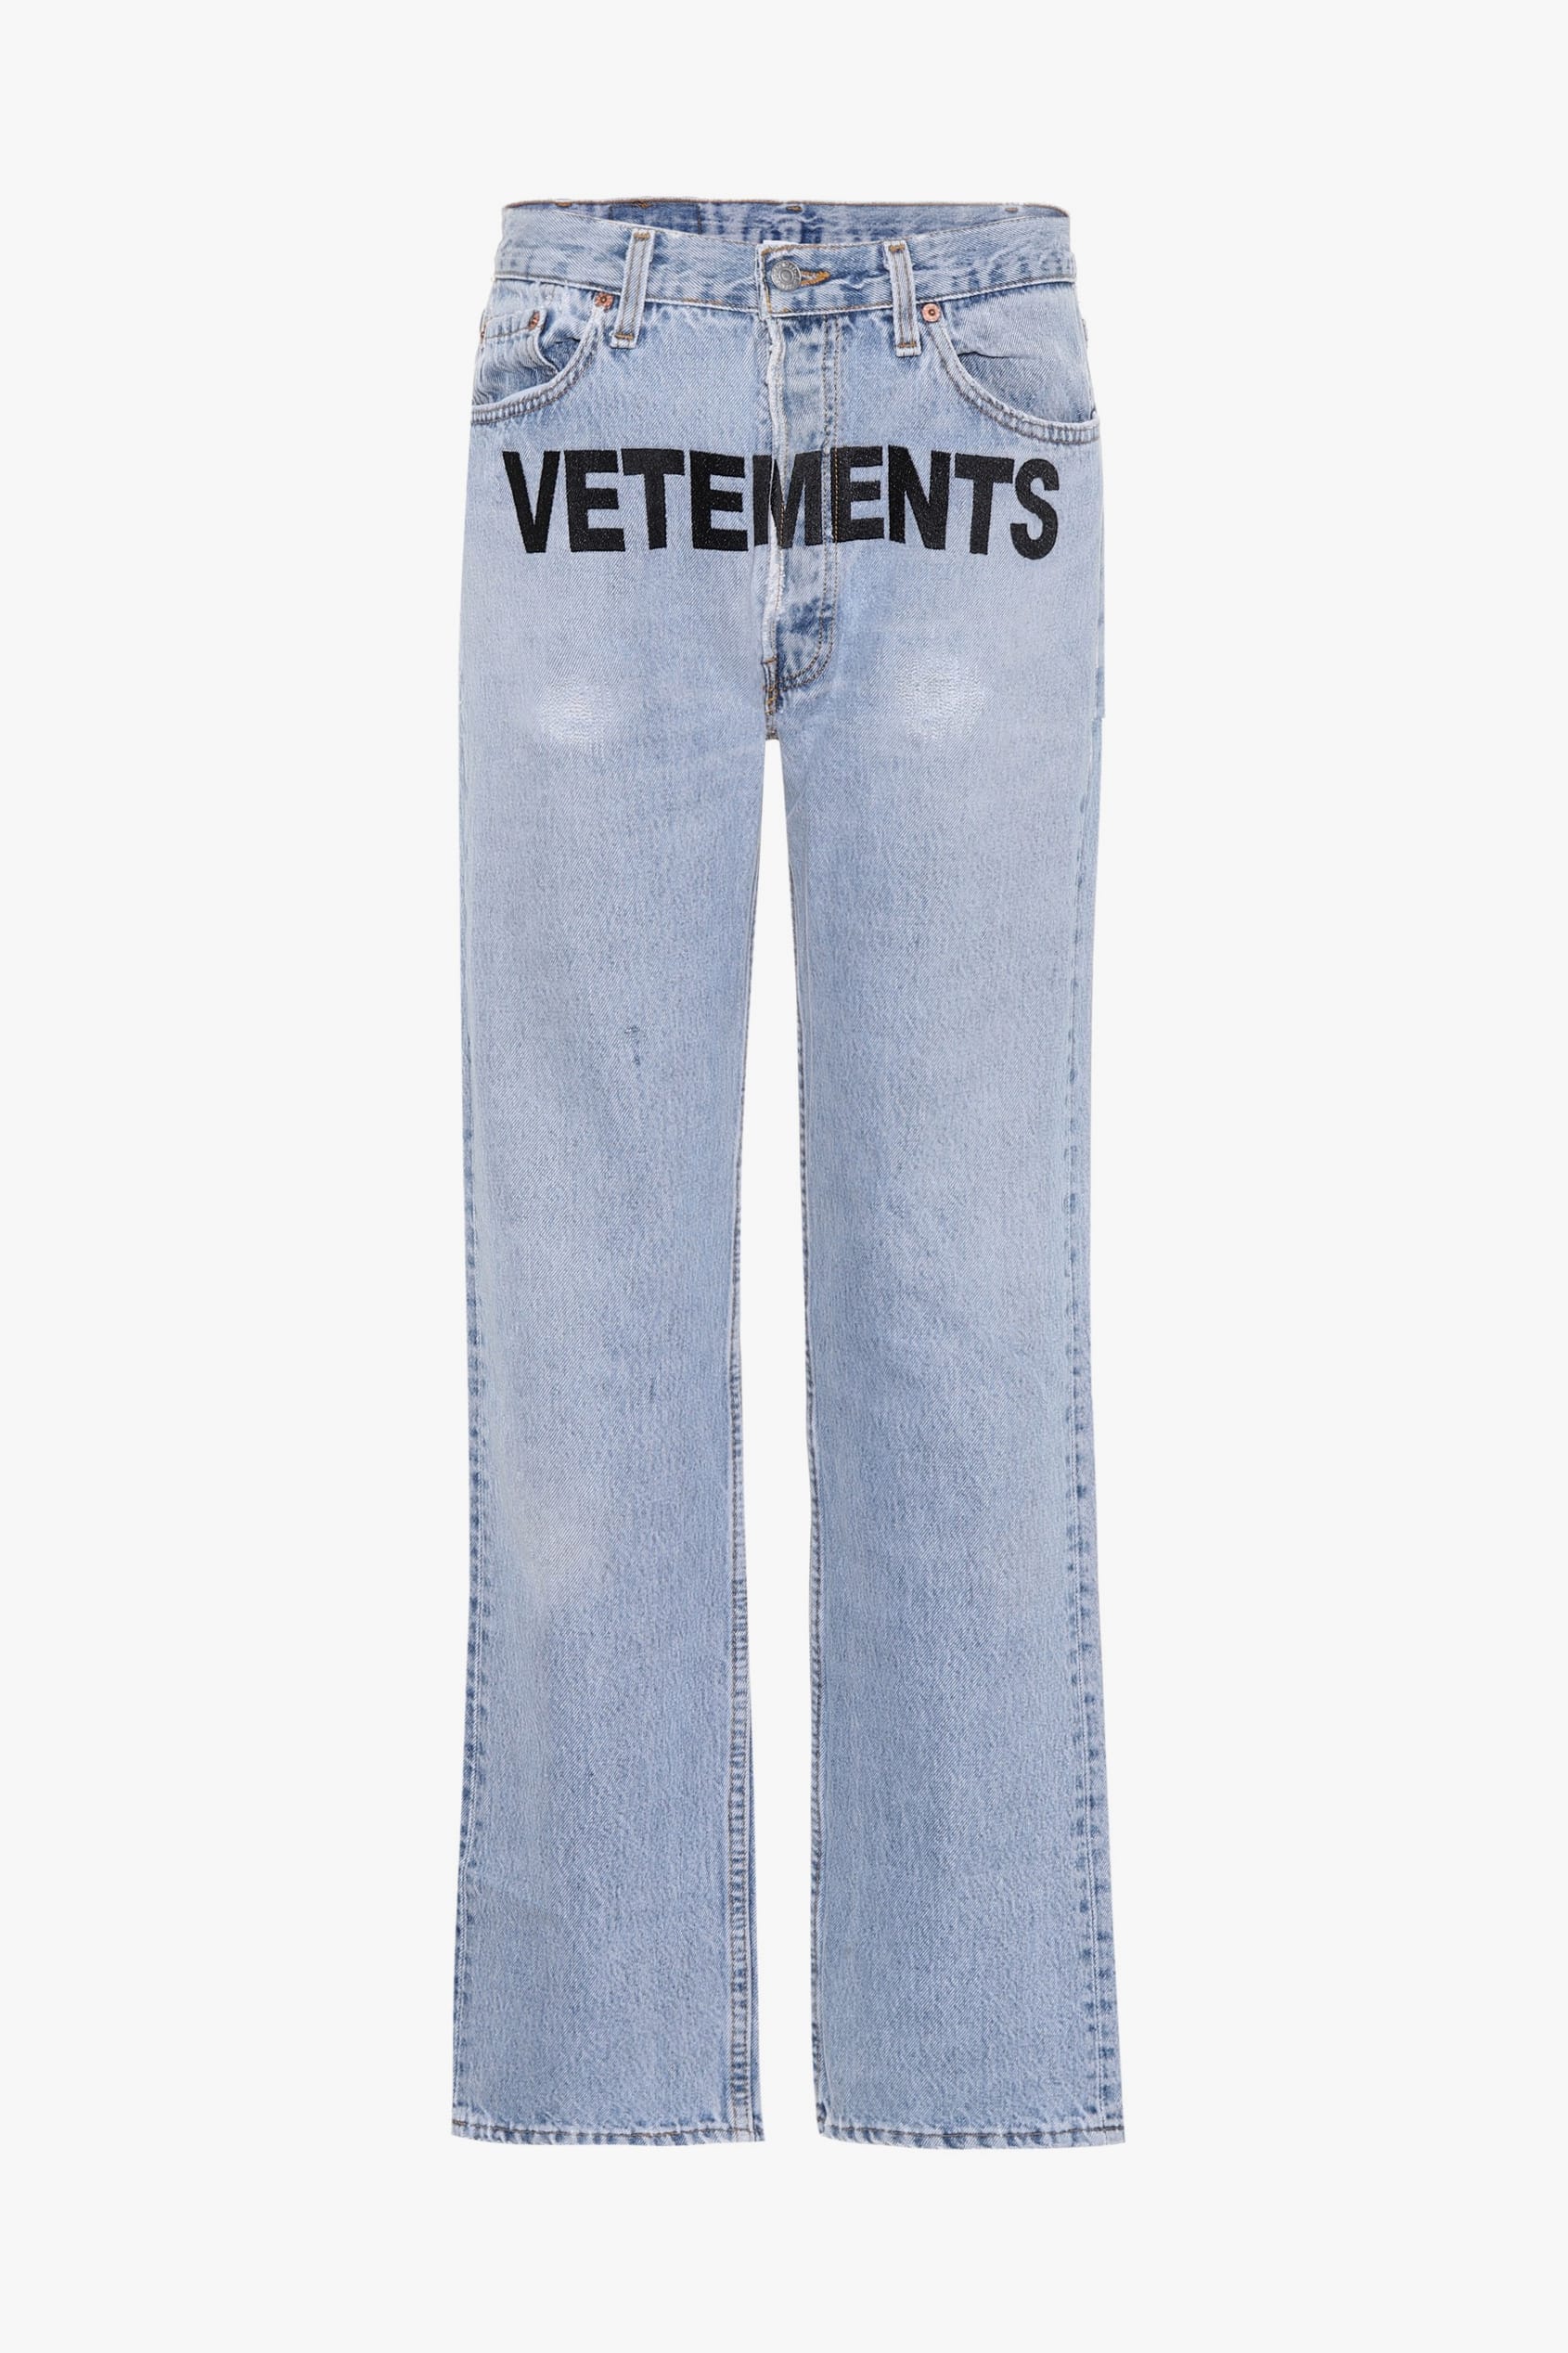 vetements x levi's jeans